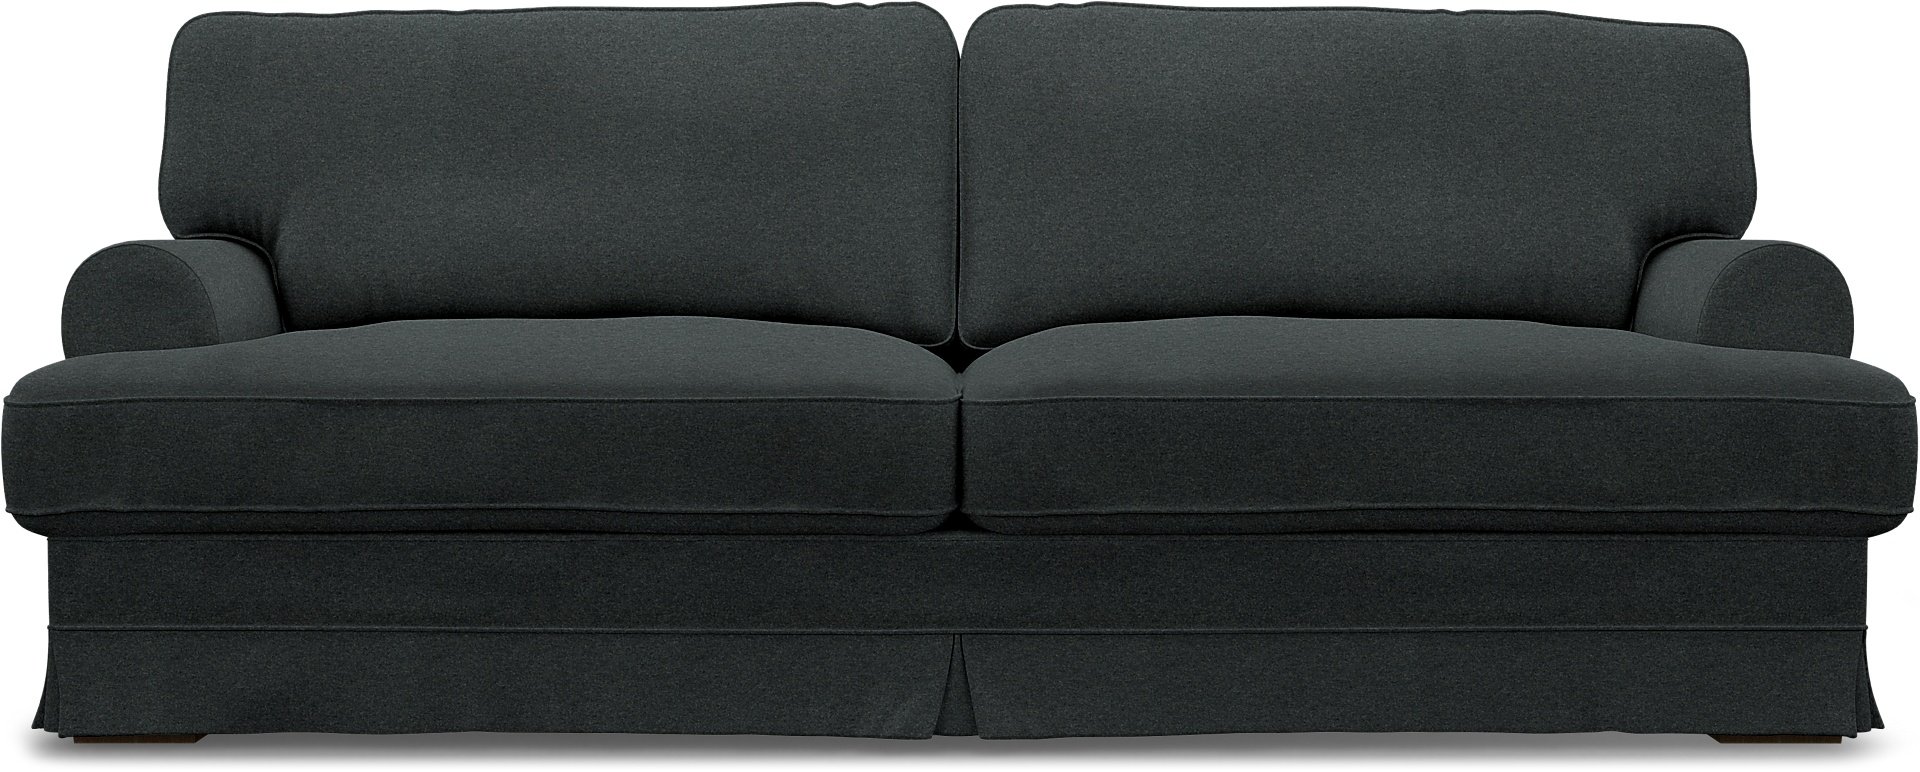 IKEA - Ekeskog 3 Seater Sofa Cover, Stone, Wool - Bemz